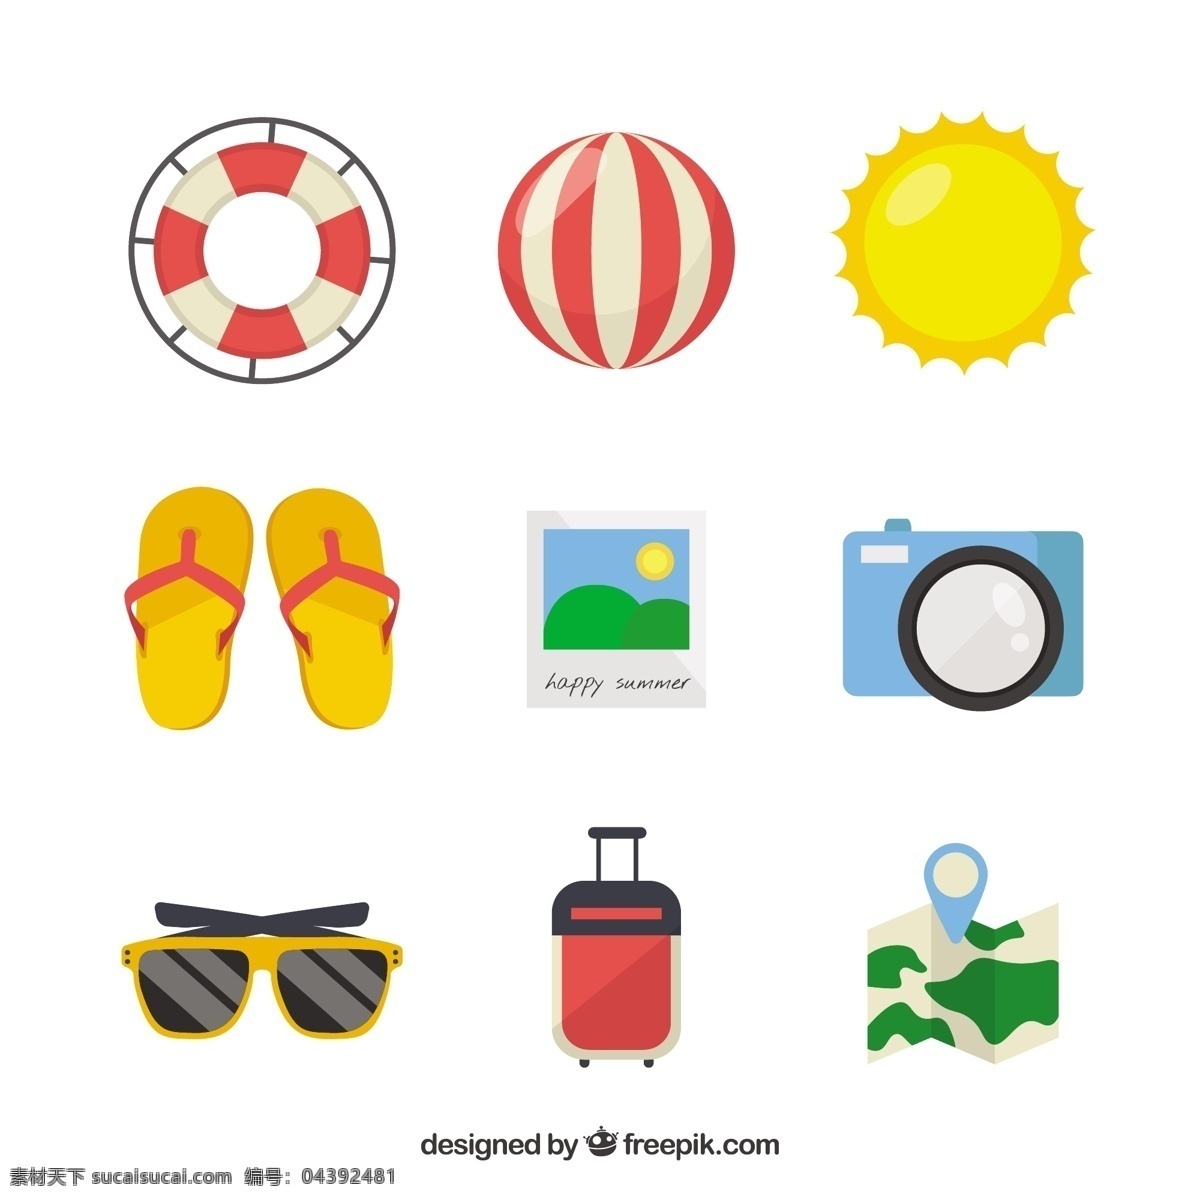 平面设计 中 夏季 对象 地图 相机 海洋 海滩 阳光 色彩 度假 公寓 球 太阳镜 元素 手提箱 夏季海滩 季节 物体